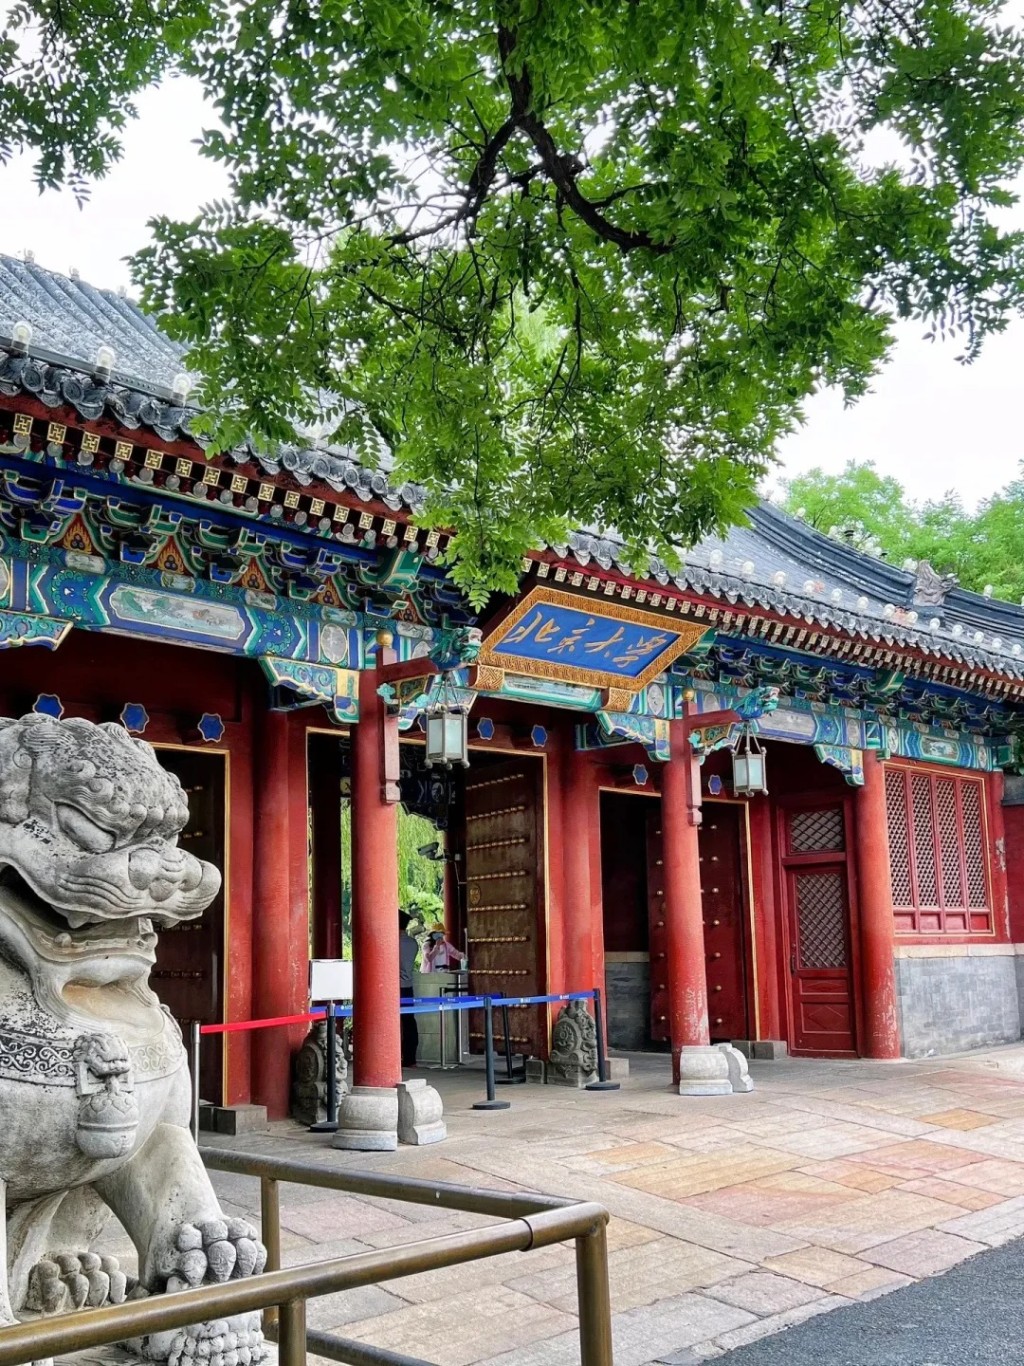 北京大学也是不少台胞希望升读的学府。小红书